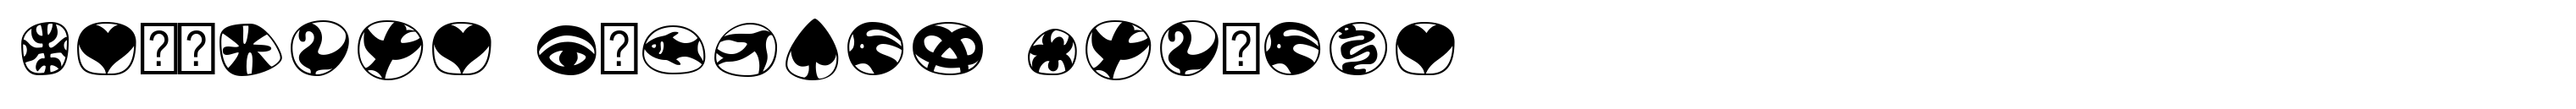 Frutiger Symbols Regular